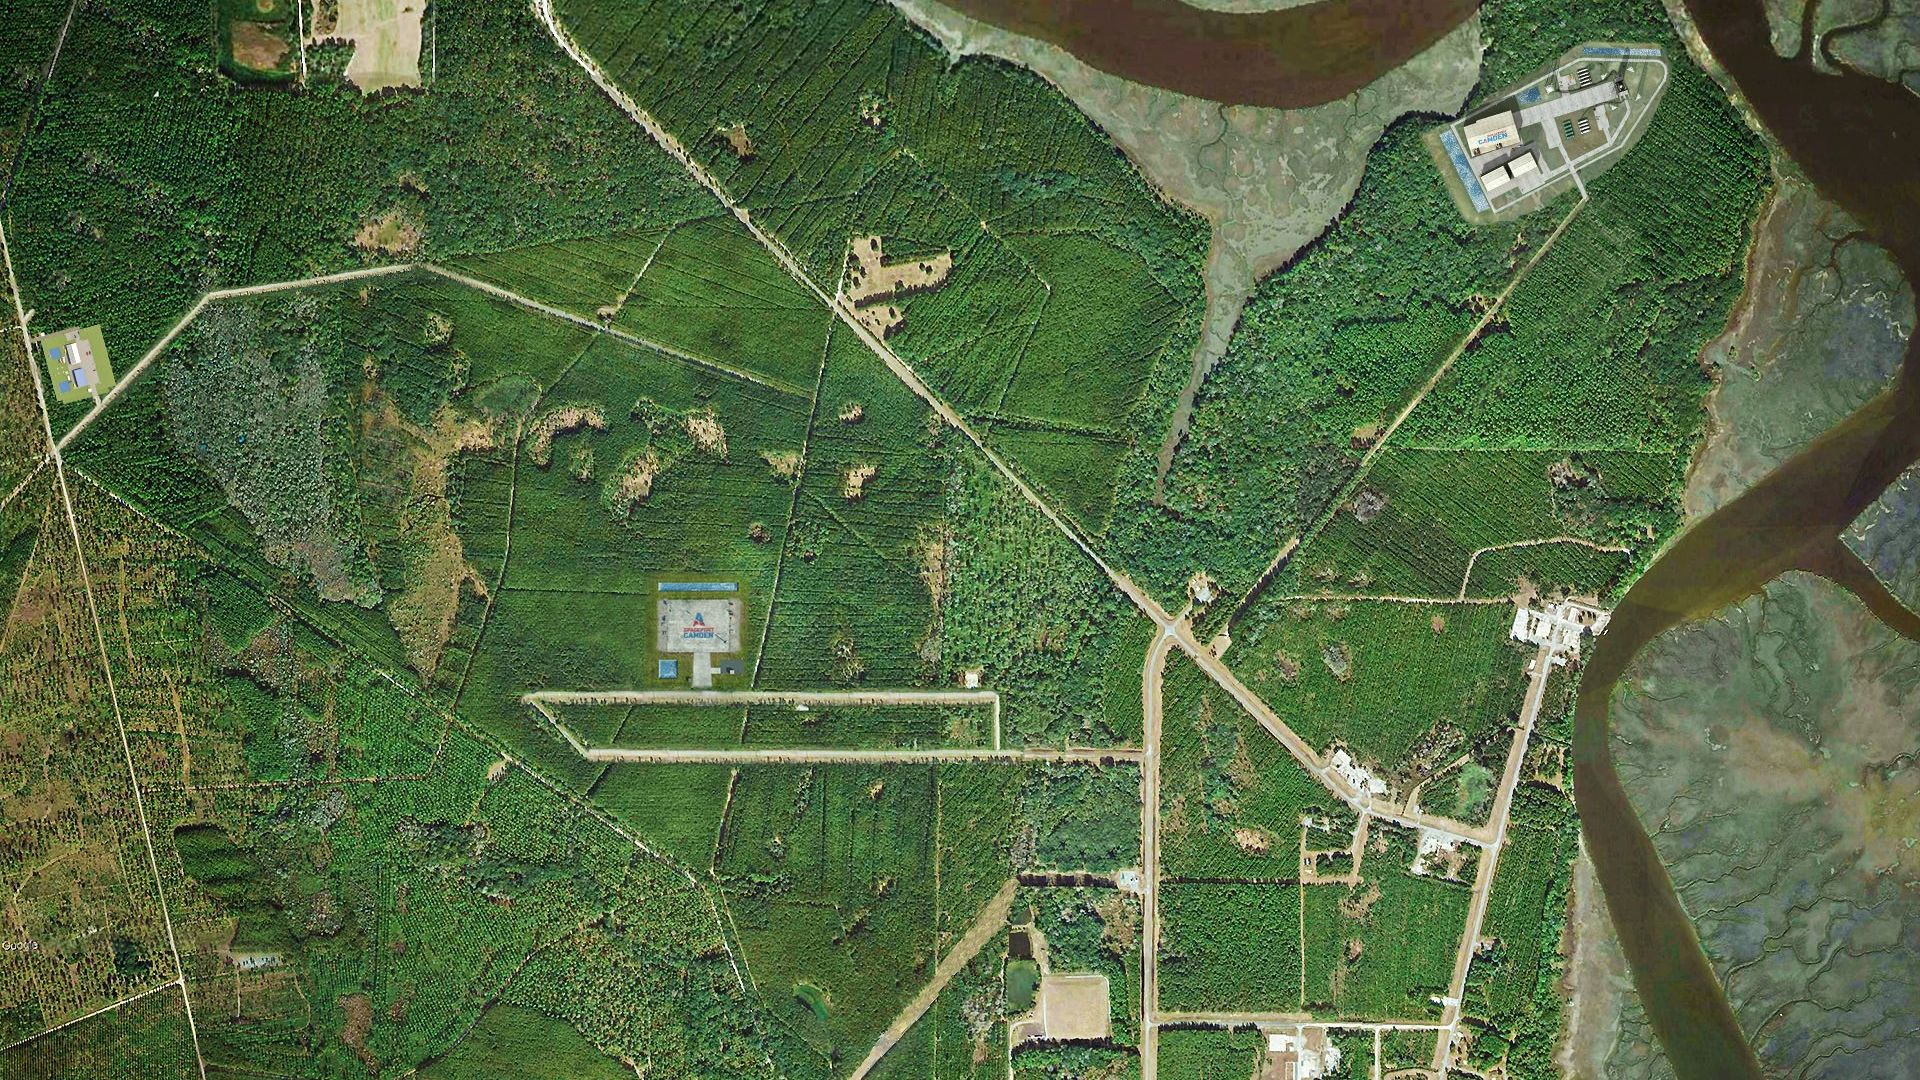 aerial view of spaceport rendering in the marsh